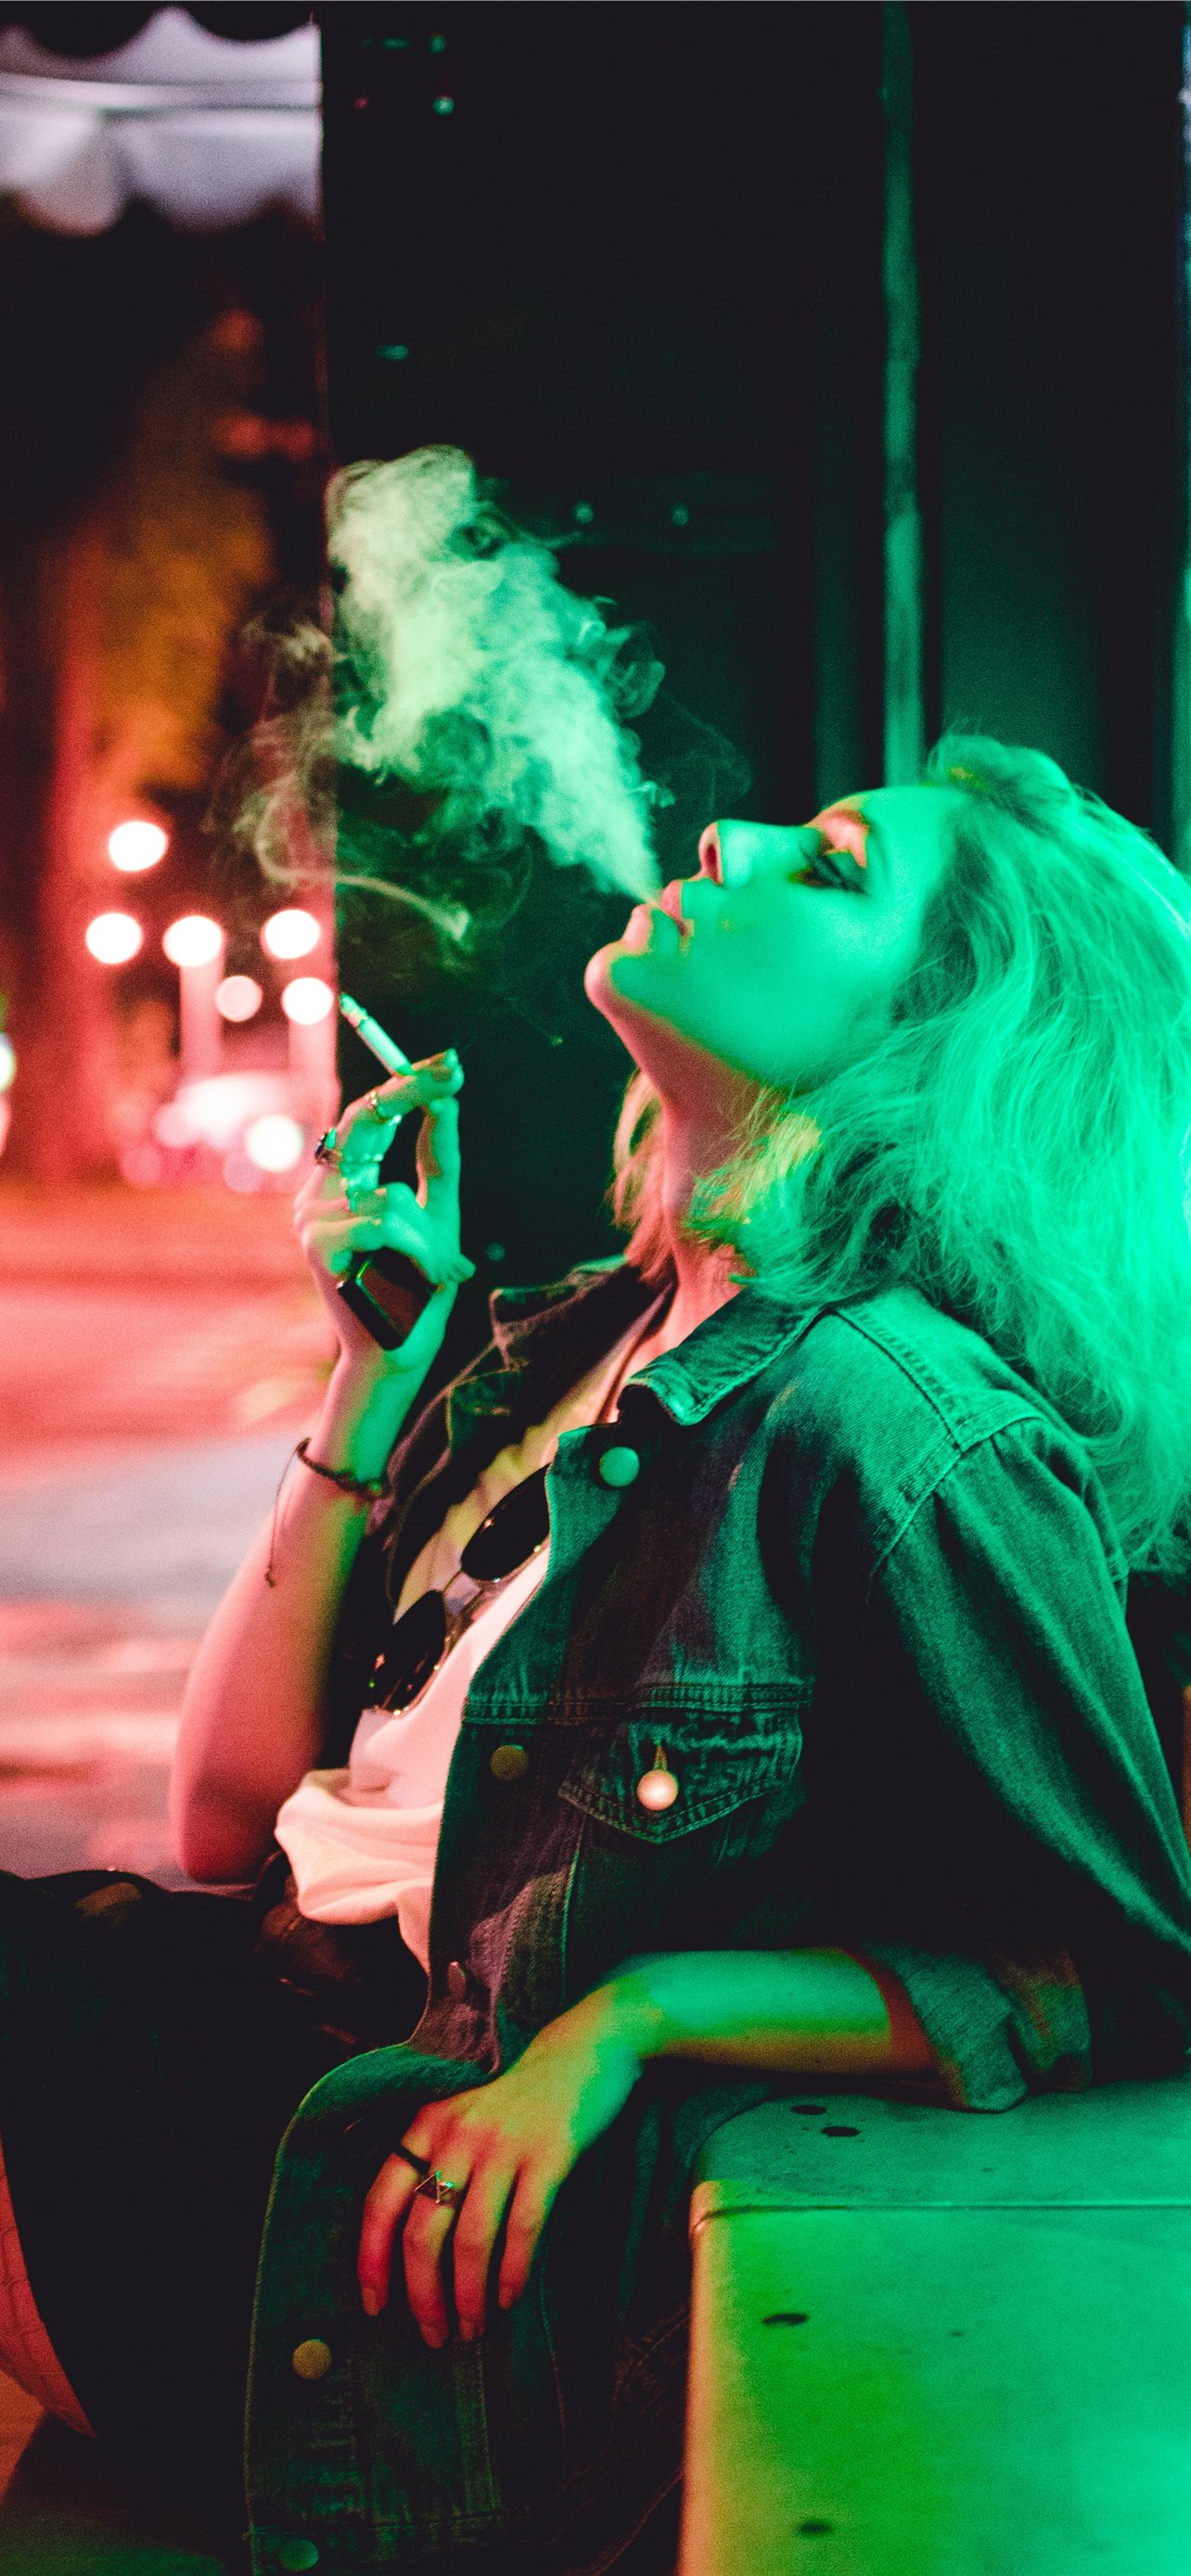 woman smoking during nighttime iPhone Wallpaper Free Download